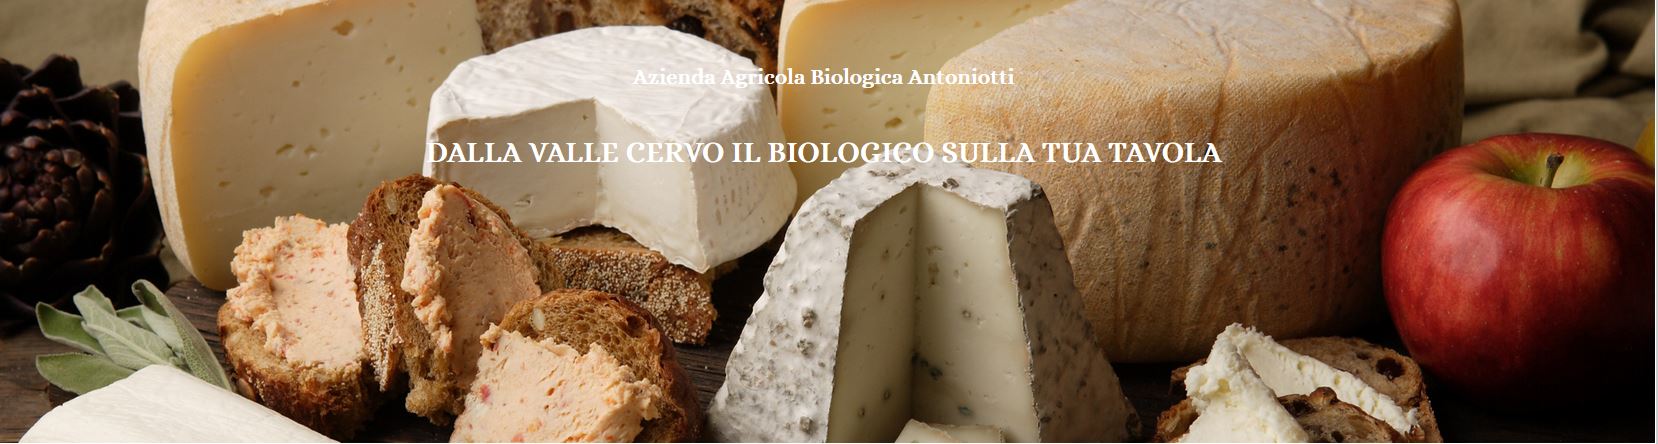 Azienda Agricola Biologia Antoniotti